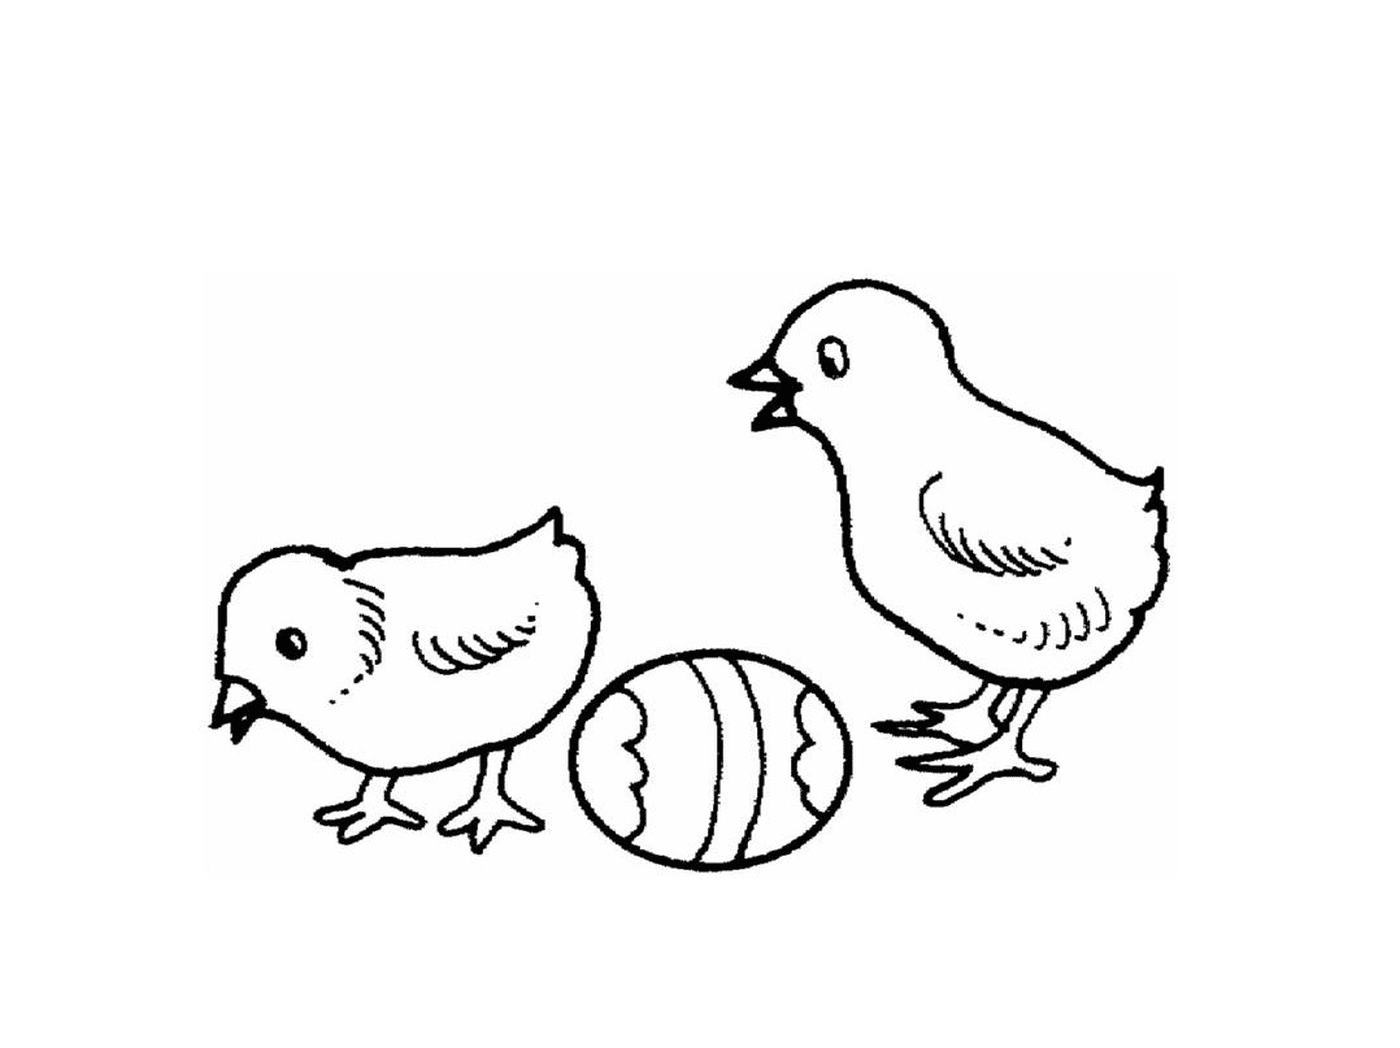  دجاجتان و بيضة واحدة تقف جنباً إلى جنب جنباً إلى جنب 